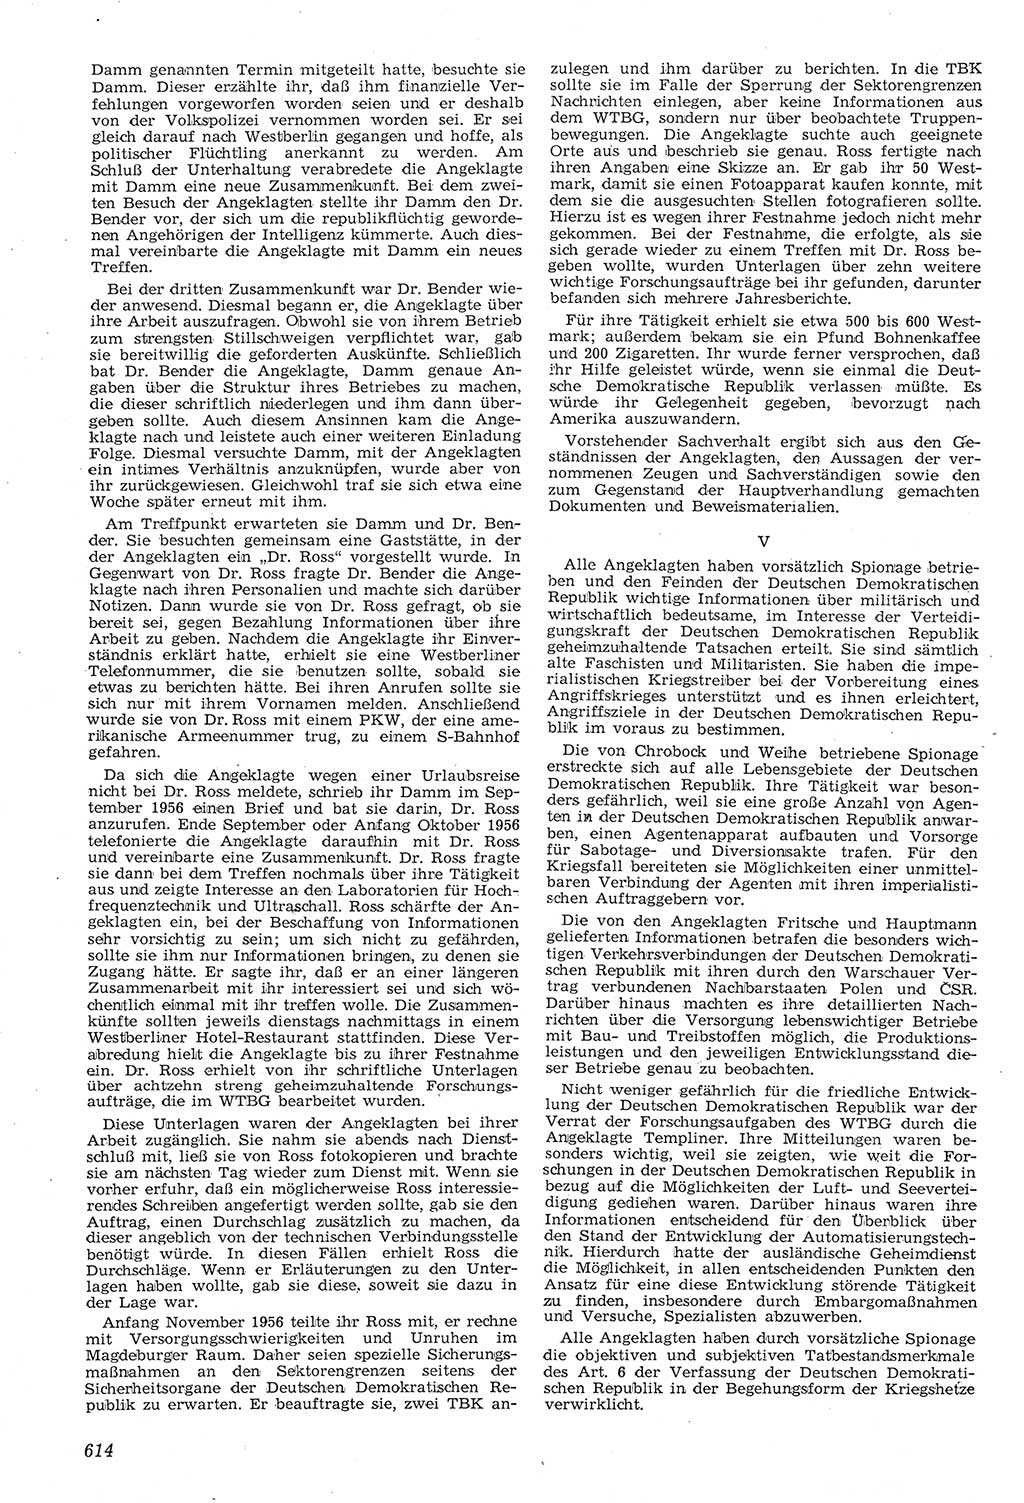 Neue Justiz (NJ), Zeitschrift für Recht und Rechtswissenschaft [Deutsche Demokratische Republik (DDR)], 11. Jahrgang 1957, Seite 614 (NJ DDR 1957, S. 614)